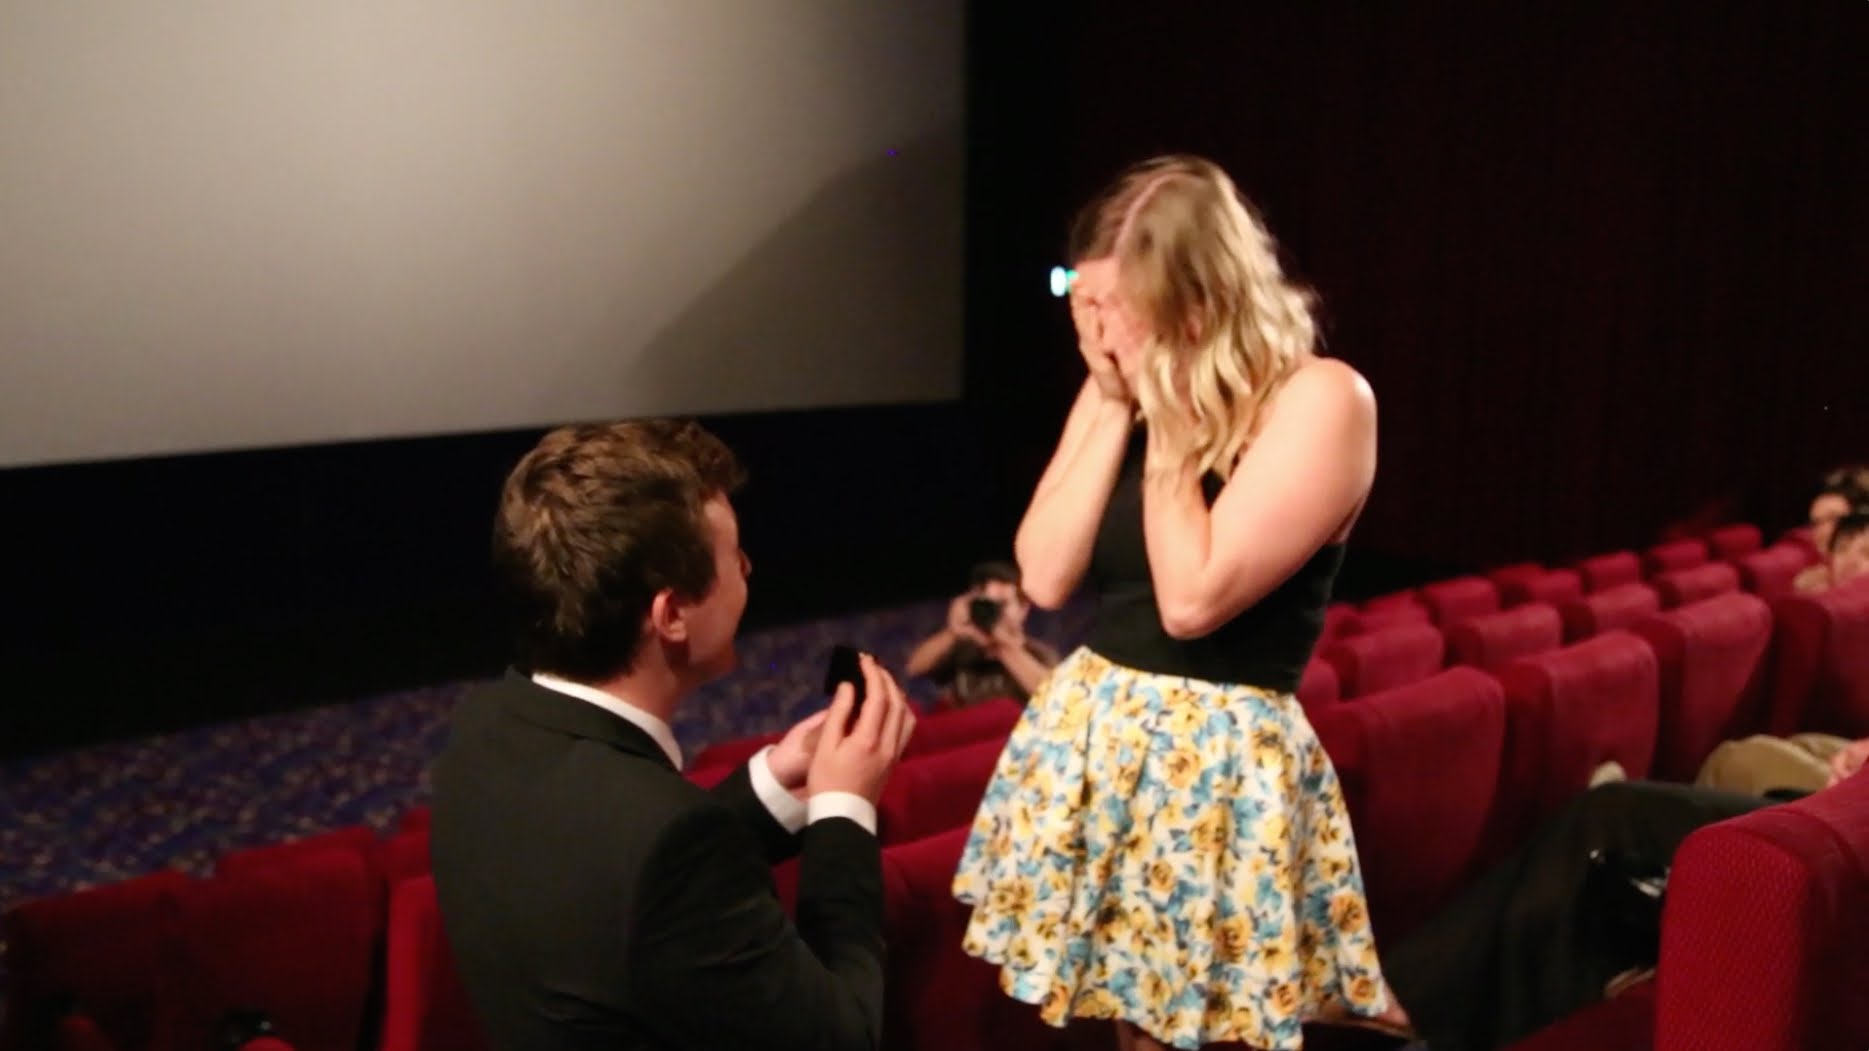 VIDEO: Viens no pēdējā laika izcilākajiem bildinājumiem! (Aussie guy proposes to girlfriend in packed cinema. Best wedding proposal EVER!)